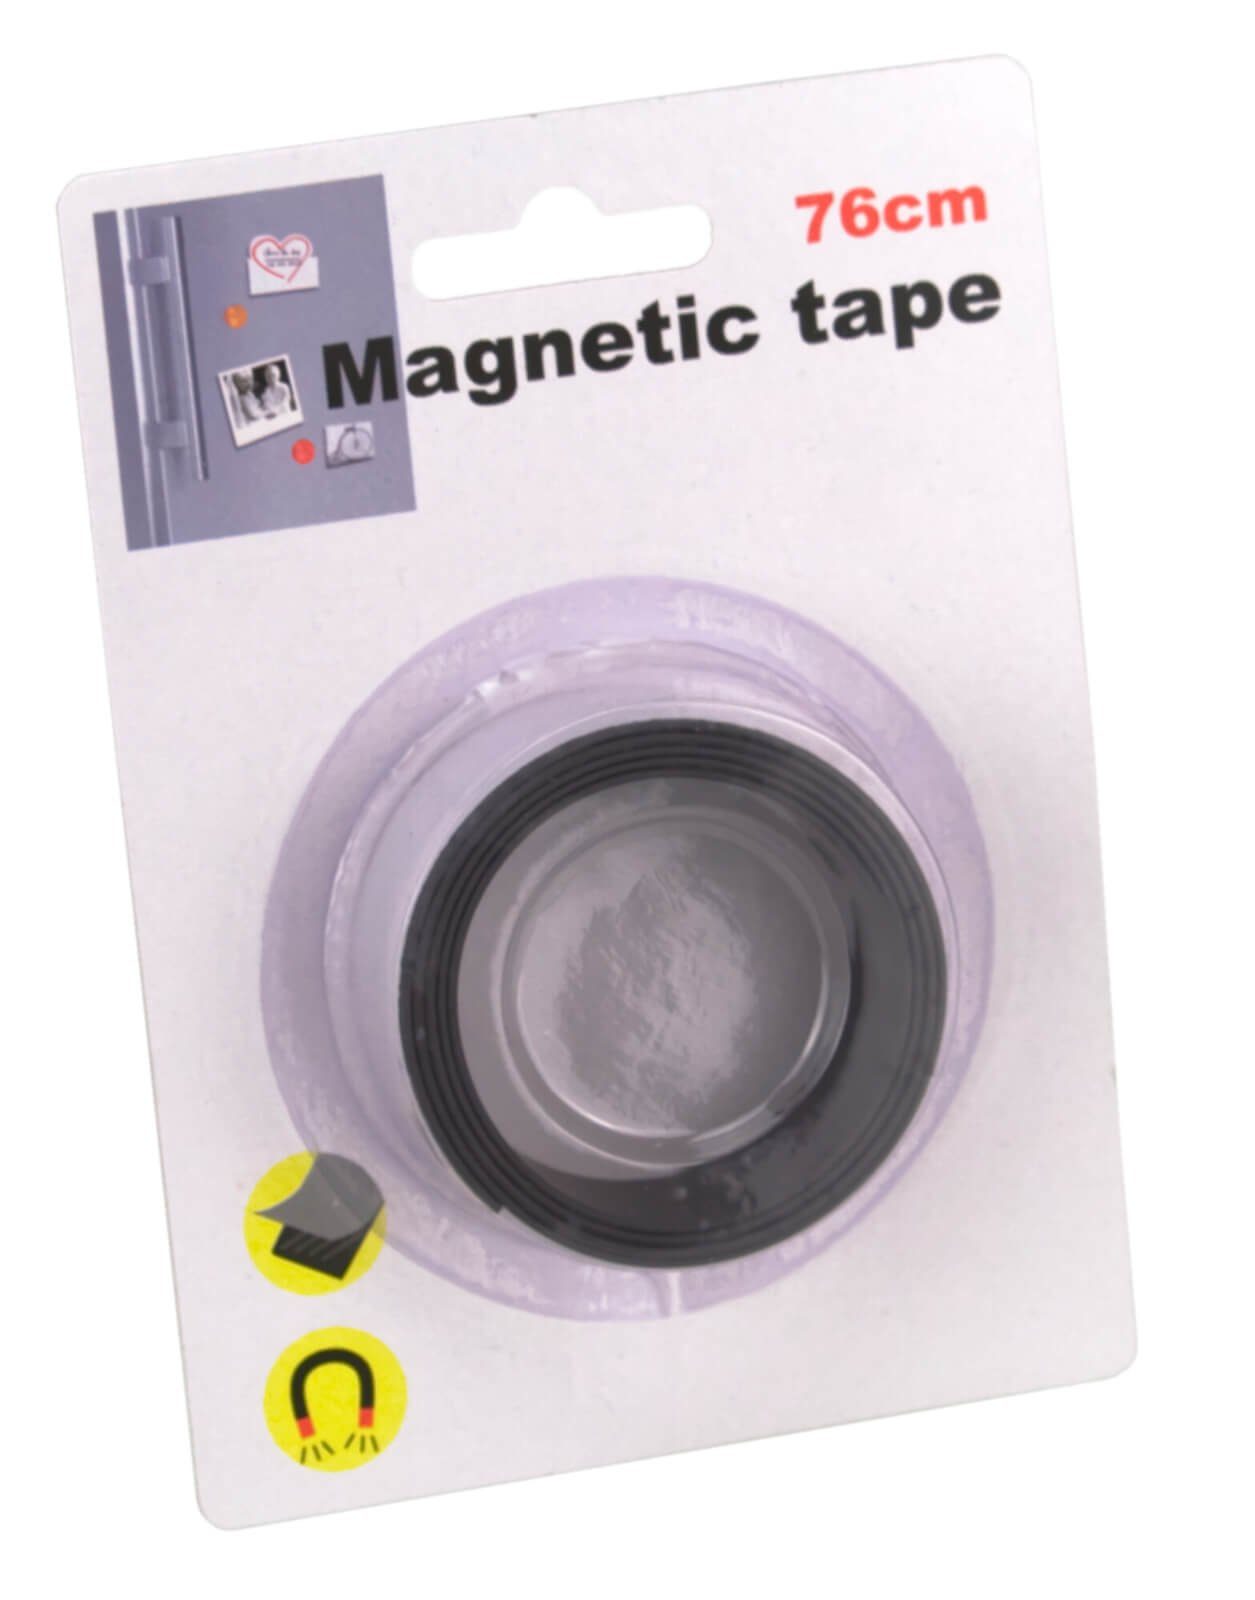 Magnetklebeband Klebeband magnetisches 76cm Tape